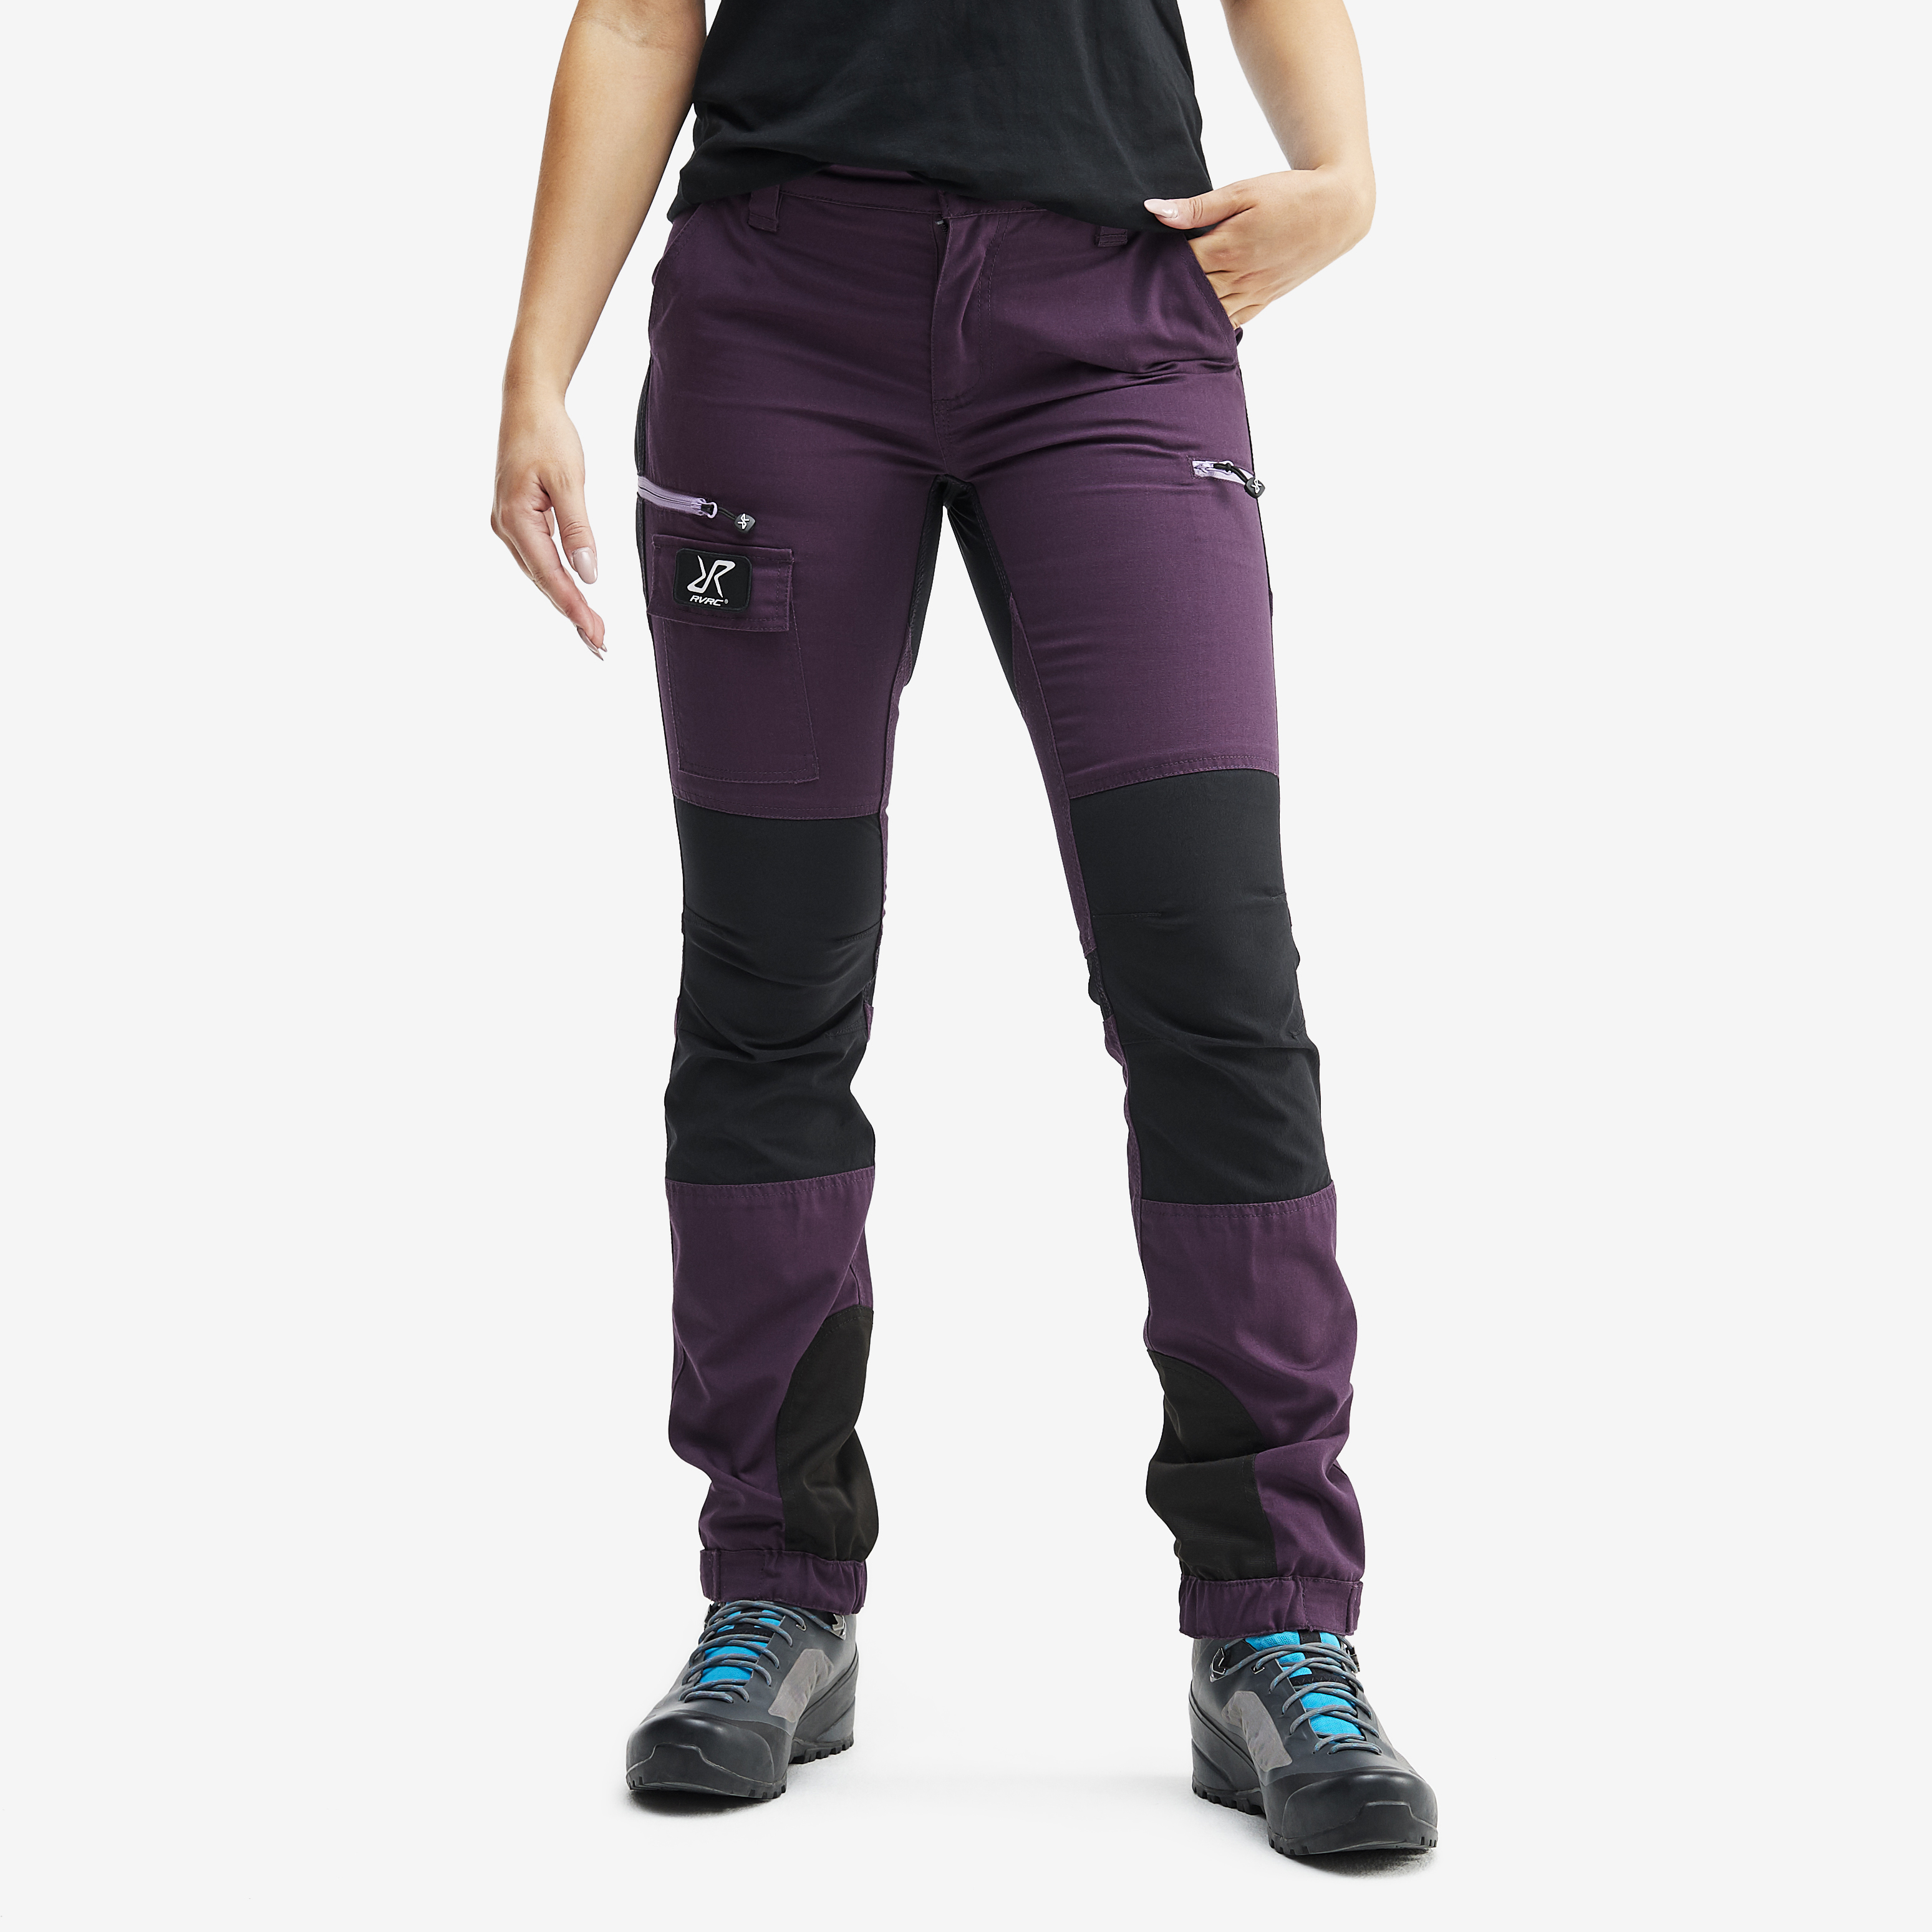 Nordwand walking trousers for women in purple